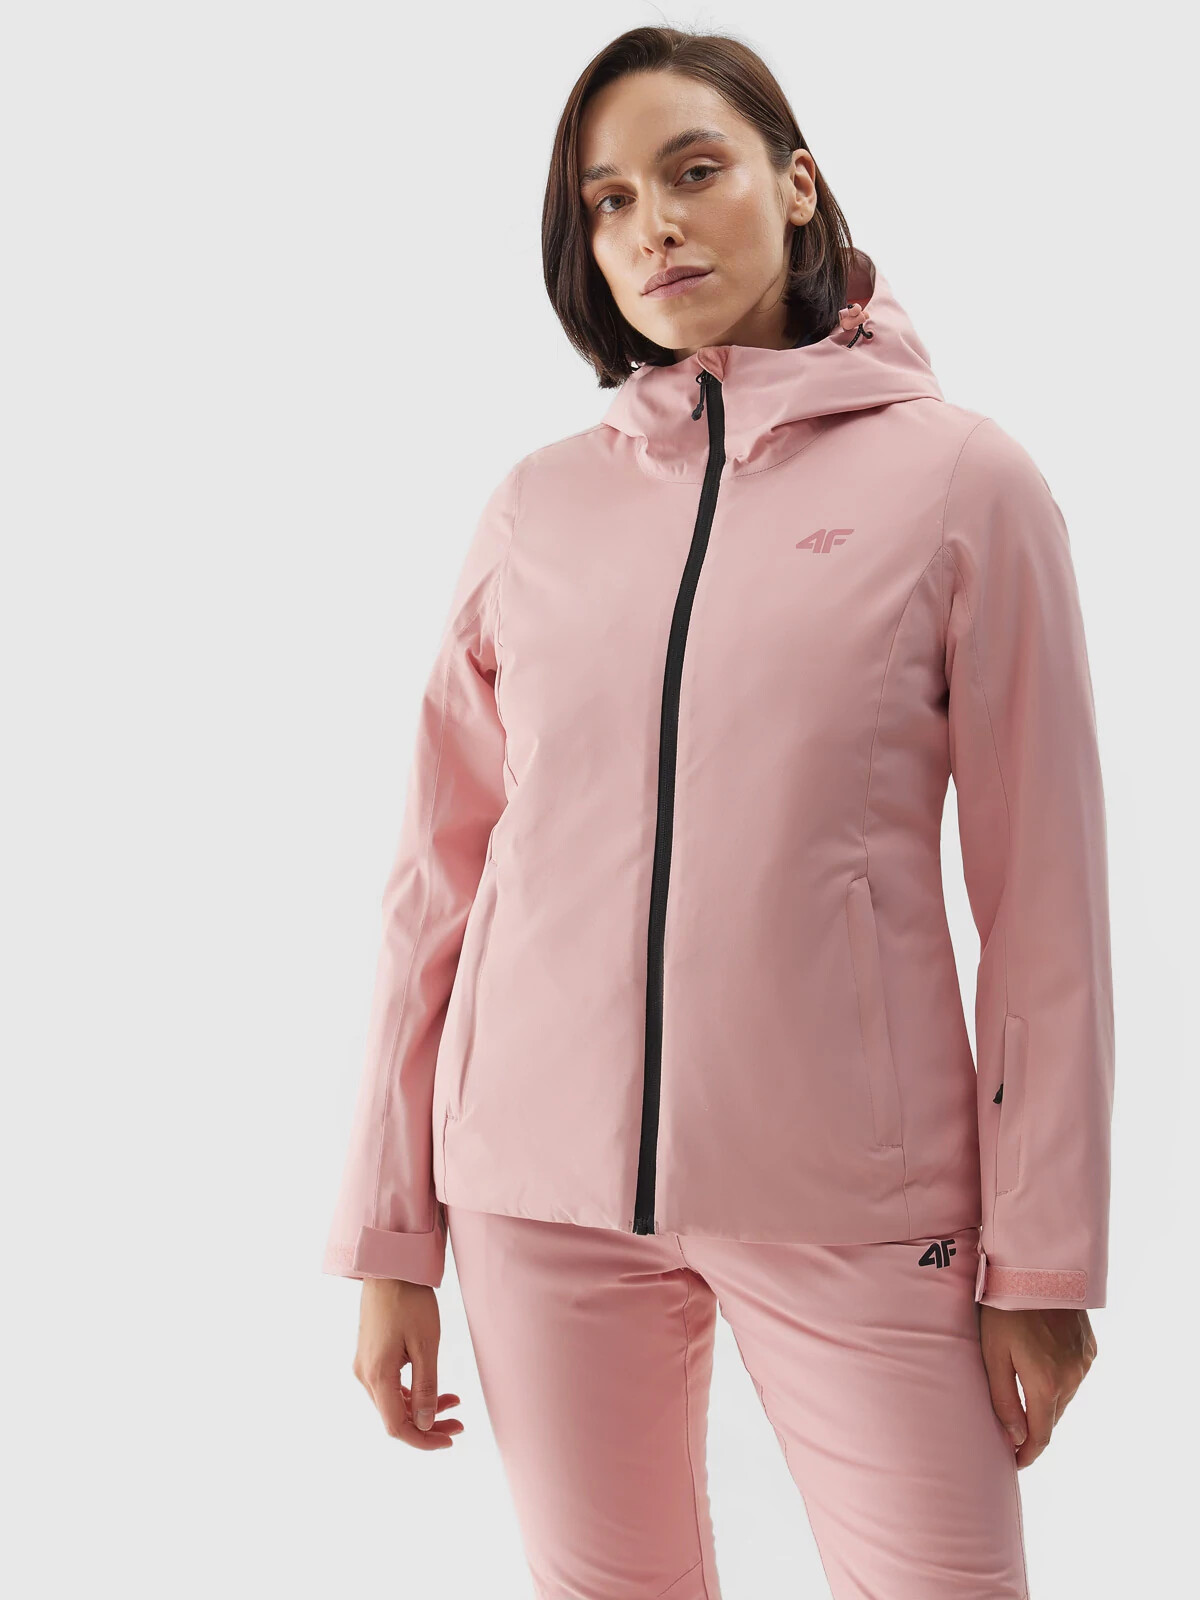 Dámská lyžařská bunda membrána 5000 4FAW23TJACF120-56S světle růžová - 4F M